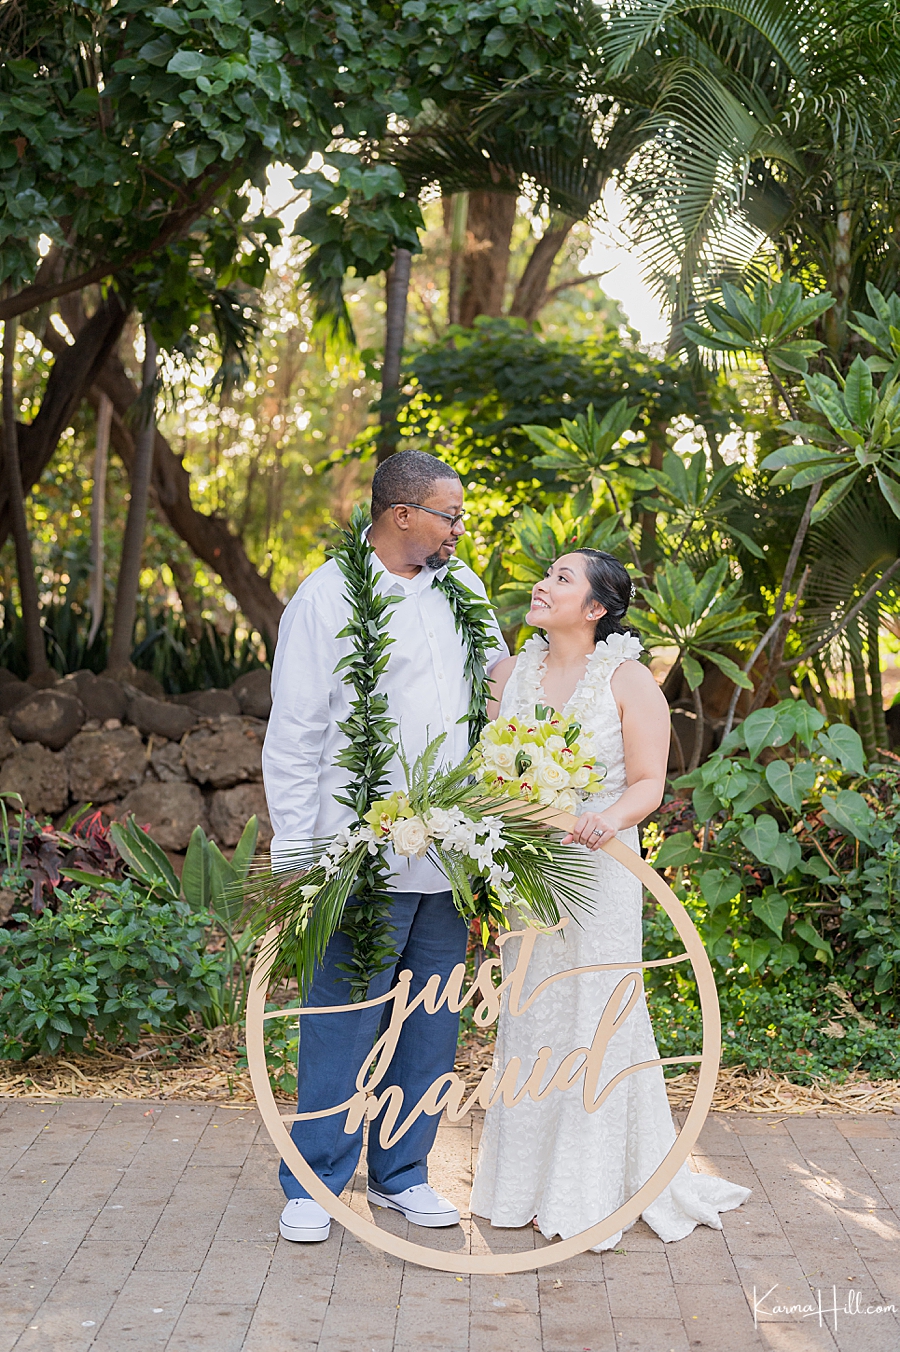 Hawaii wedding photography
